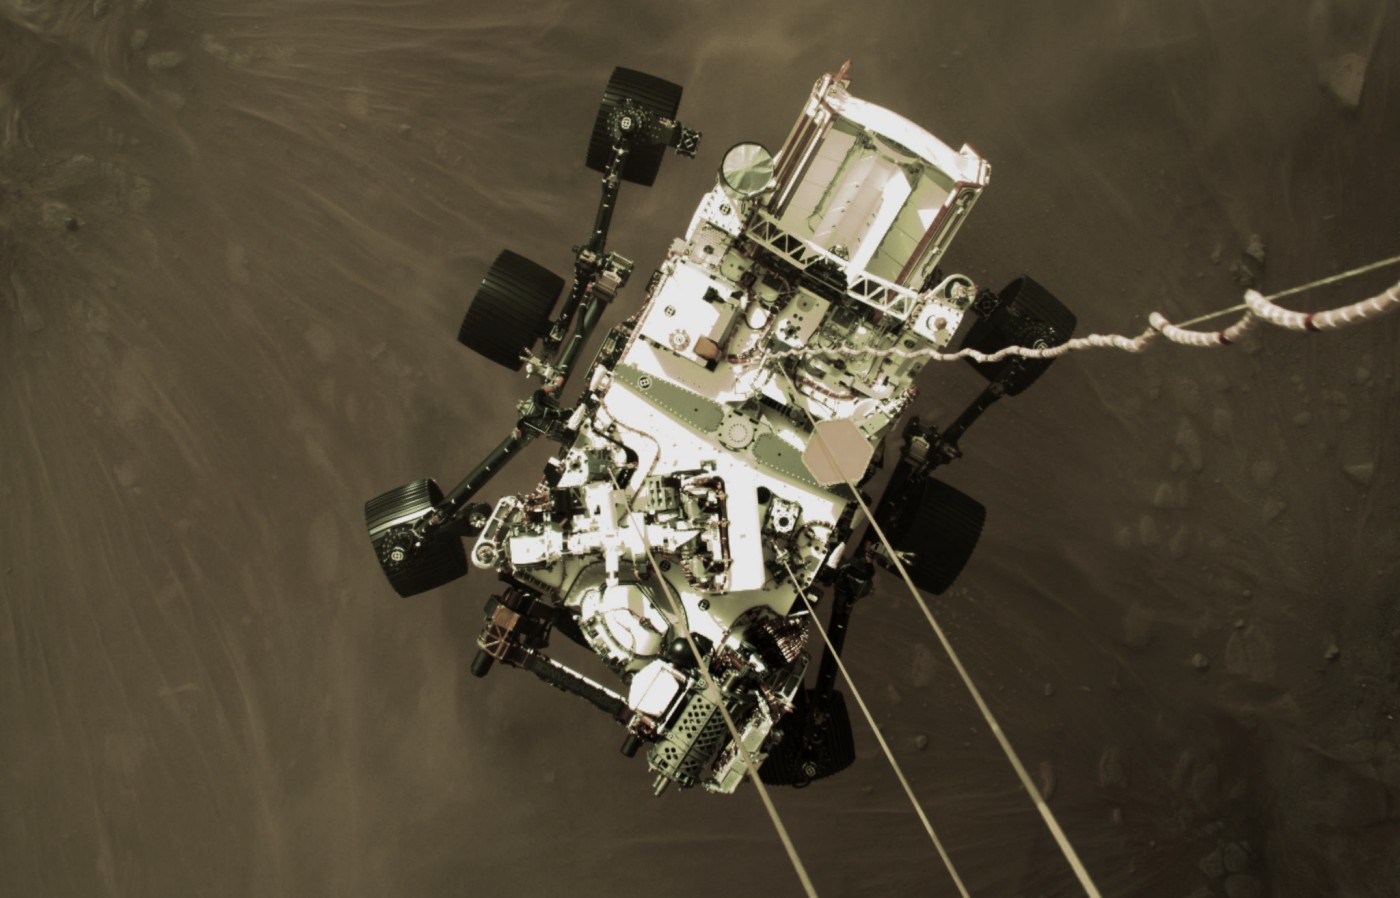 У відкритому доступі з'явилися відео та фото процедури посадки космічного апарату після входу в атмосферу Марса, а також нові зображення поверхні планети, зроблені марсоходом.